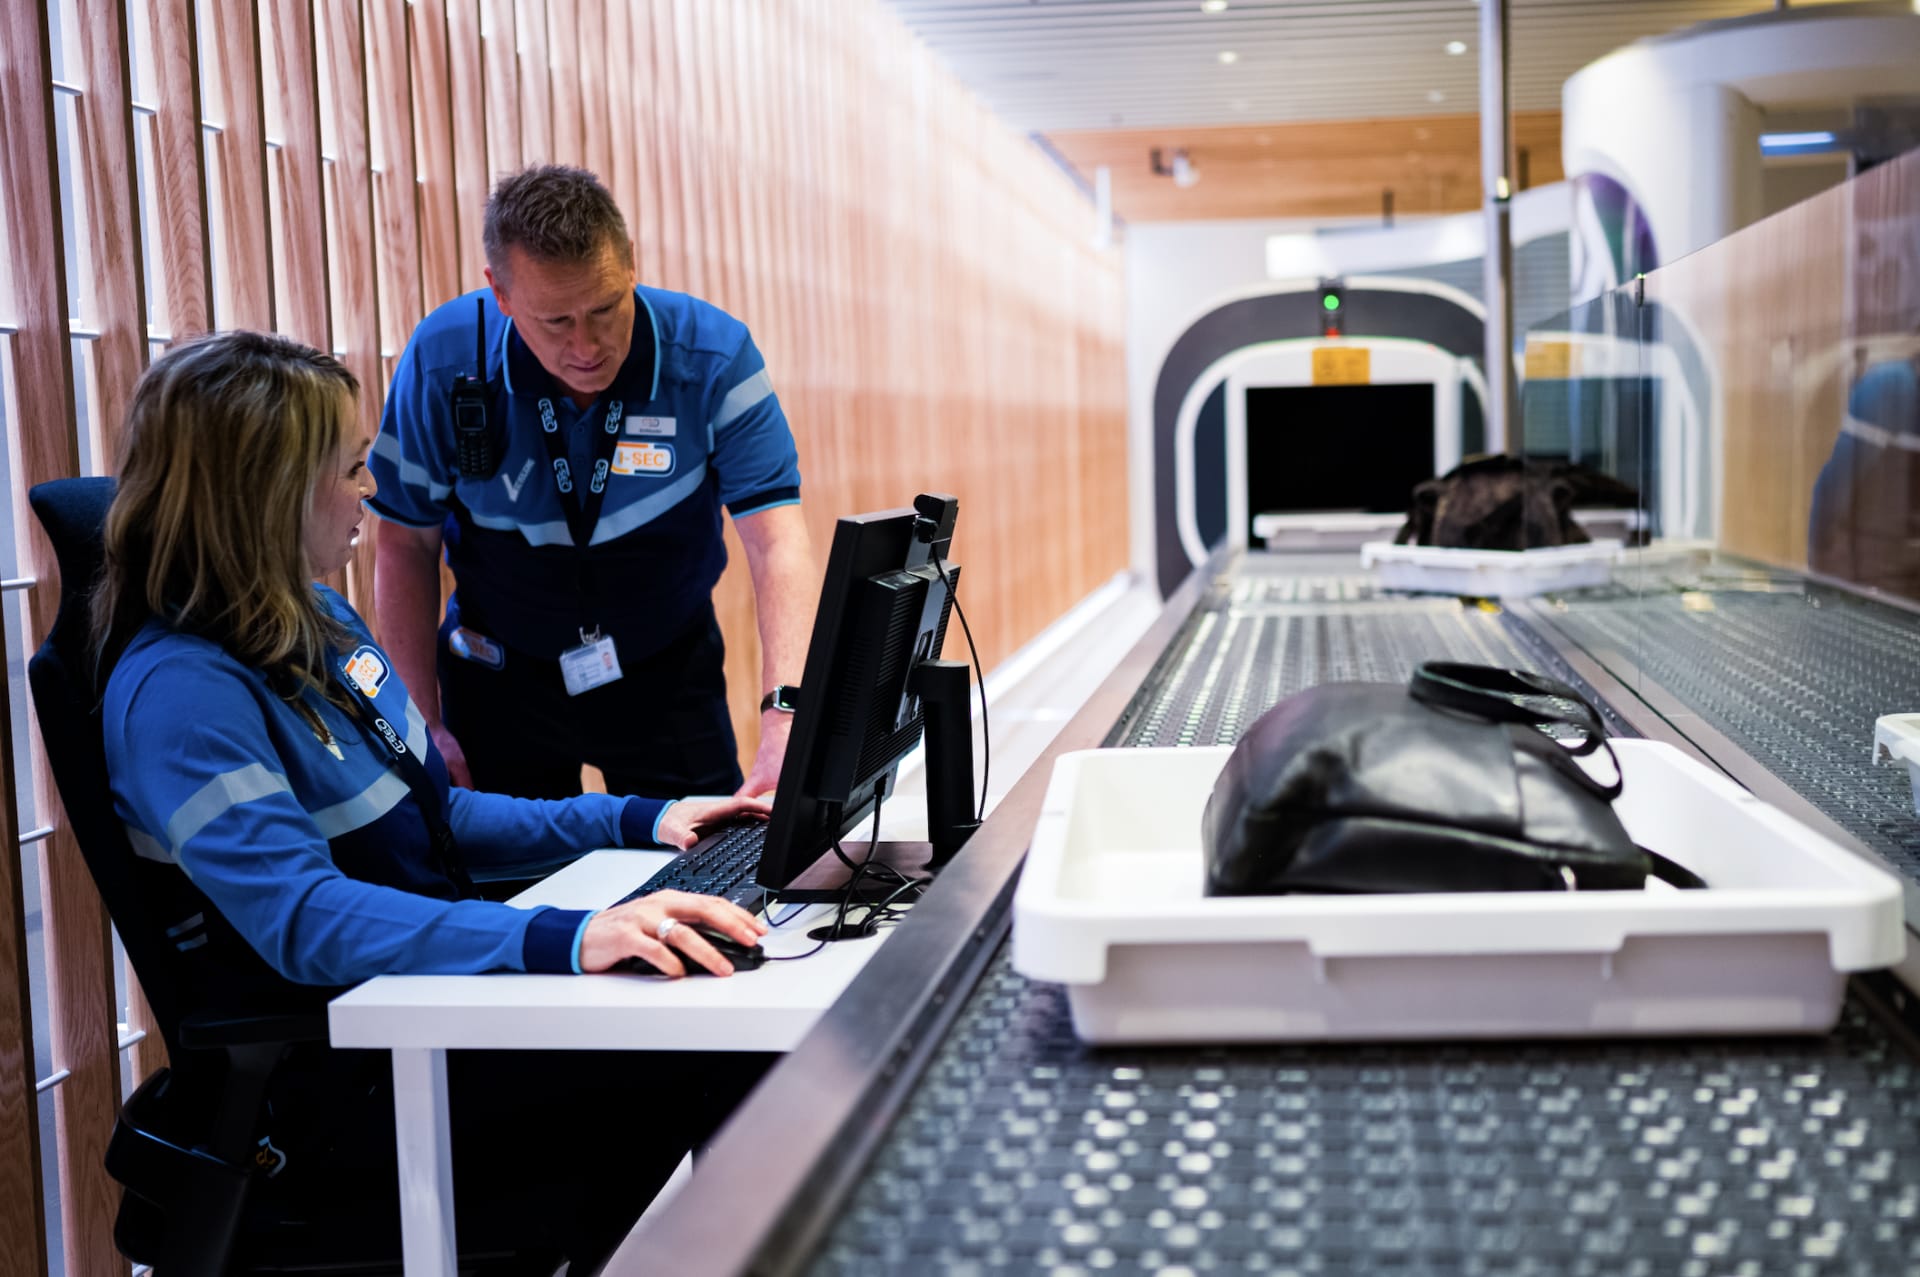 Beveiligingsmedewerkers werken samen aan een controlepunt met schermen en bagage op een luchthaven.